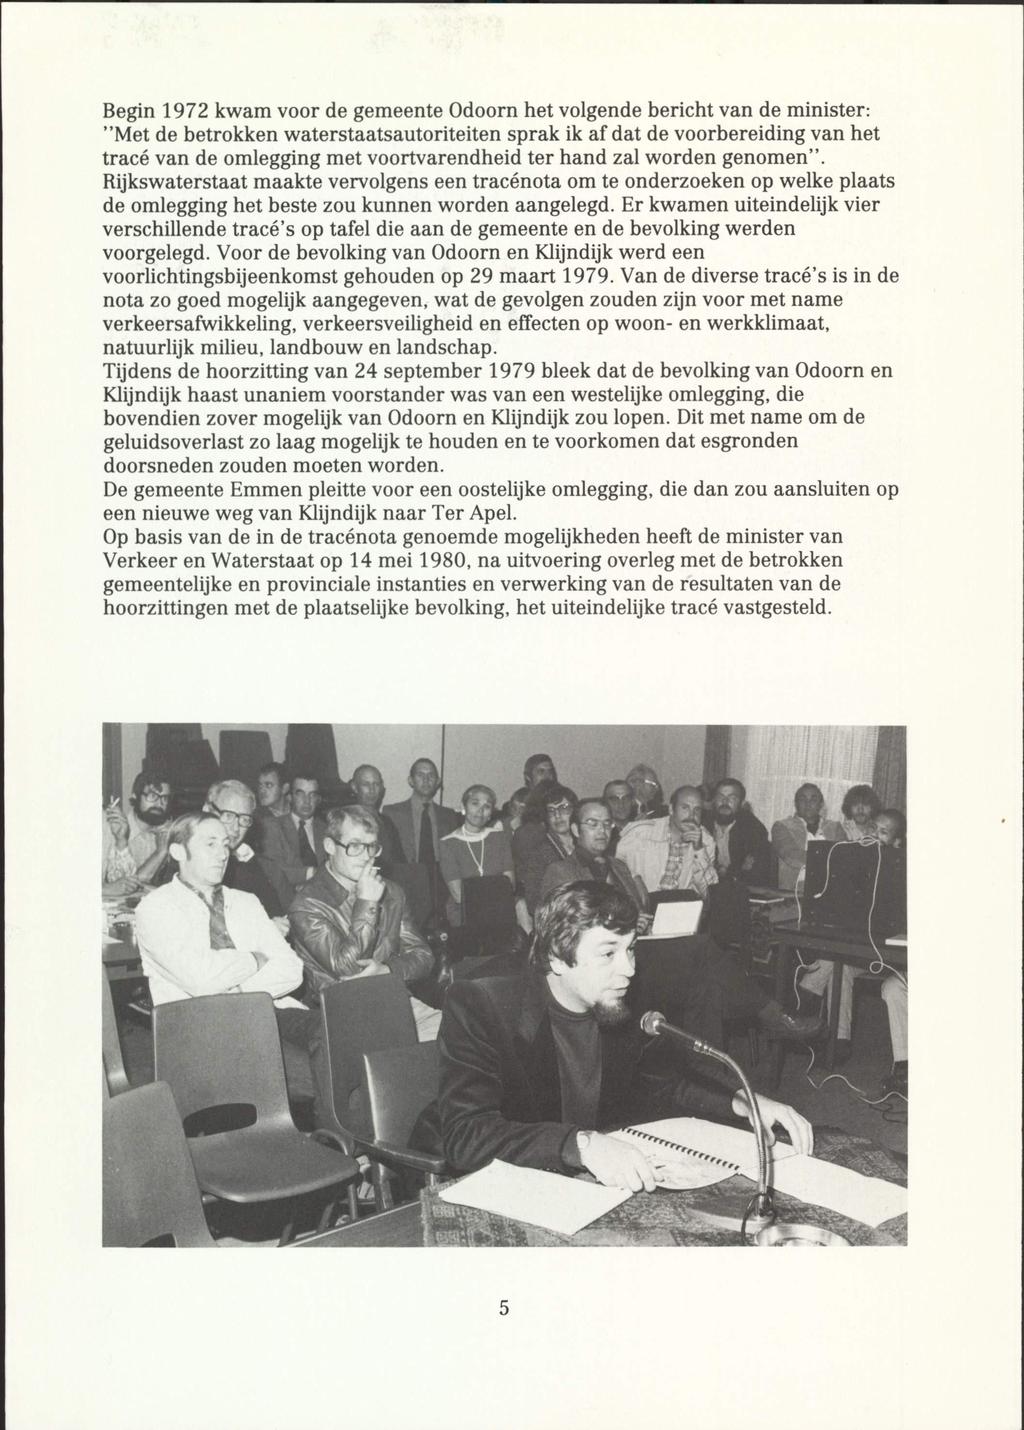 Begin 1972 kwam voor de gemeente Odoorn het volgende bericht van de minister: "Met de betrokken waterstaatsautoriteiten sprak ik af dat de voorbereiding van het trace van de omlegging met